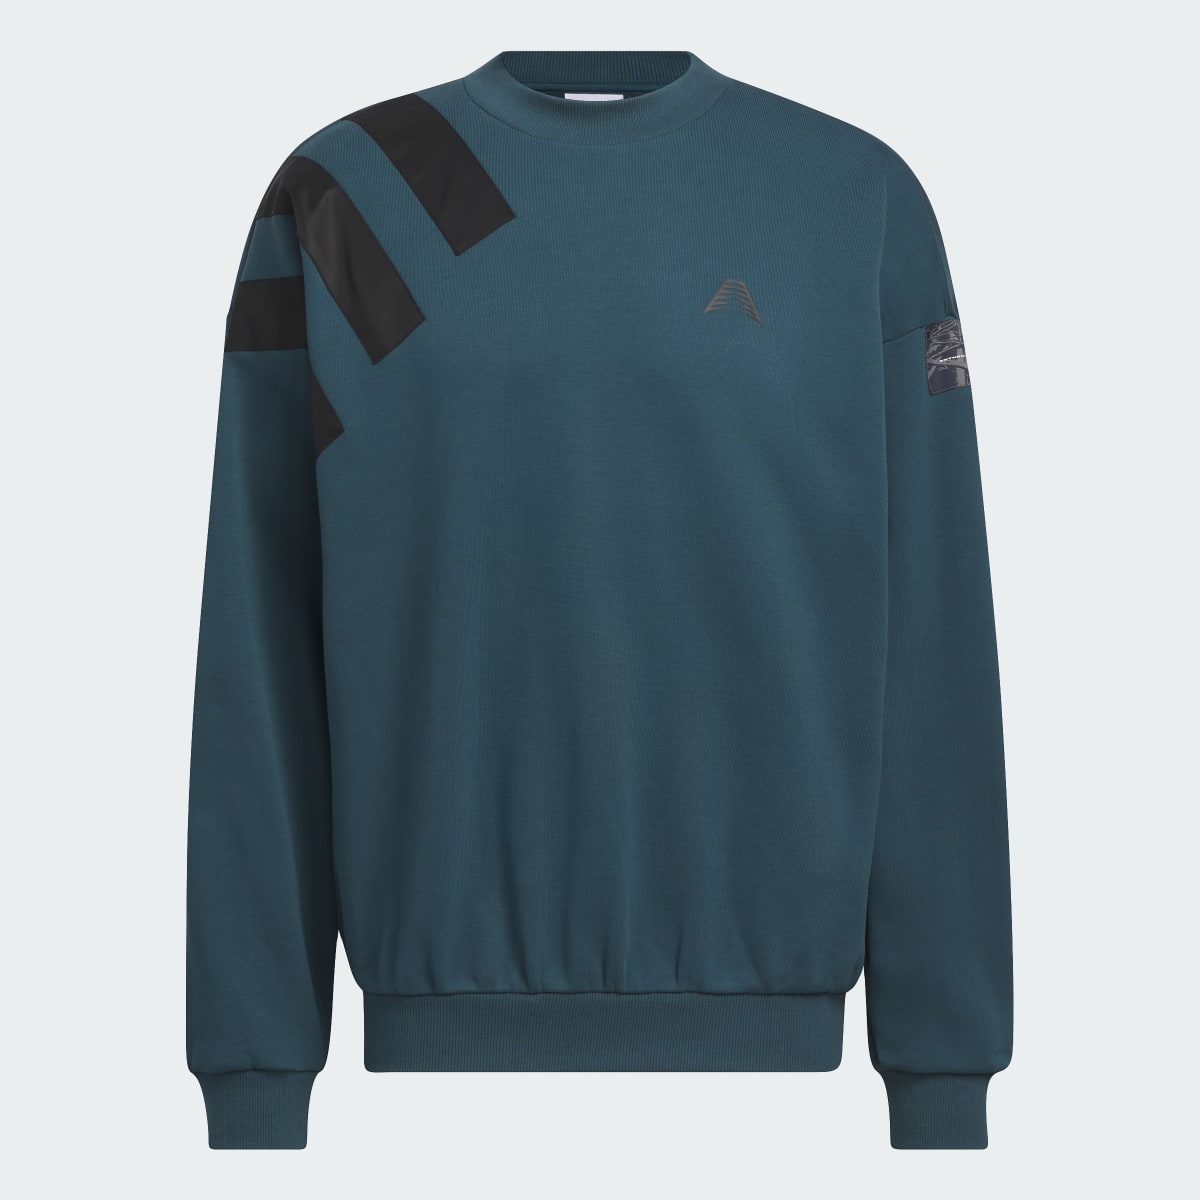 Adidas AE Foundation Sweatshirt. 5